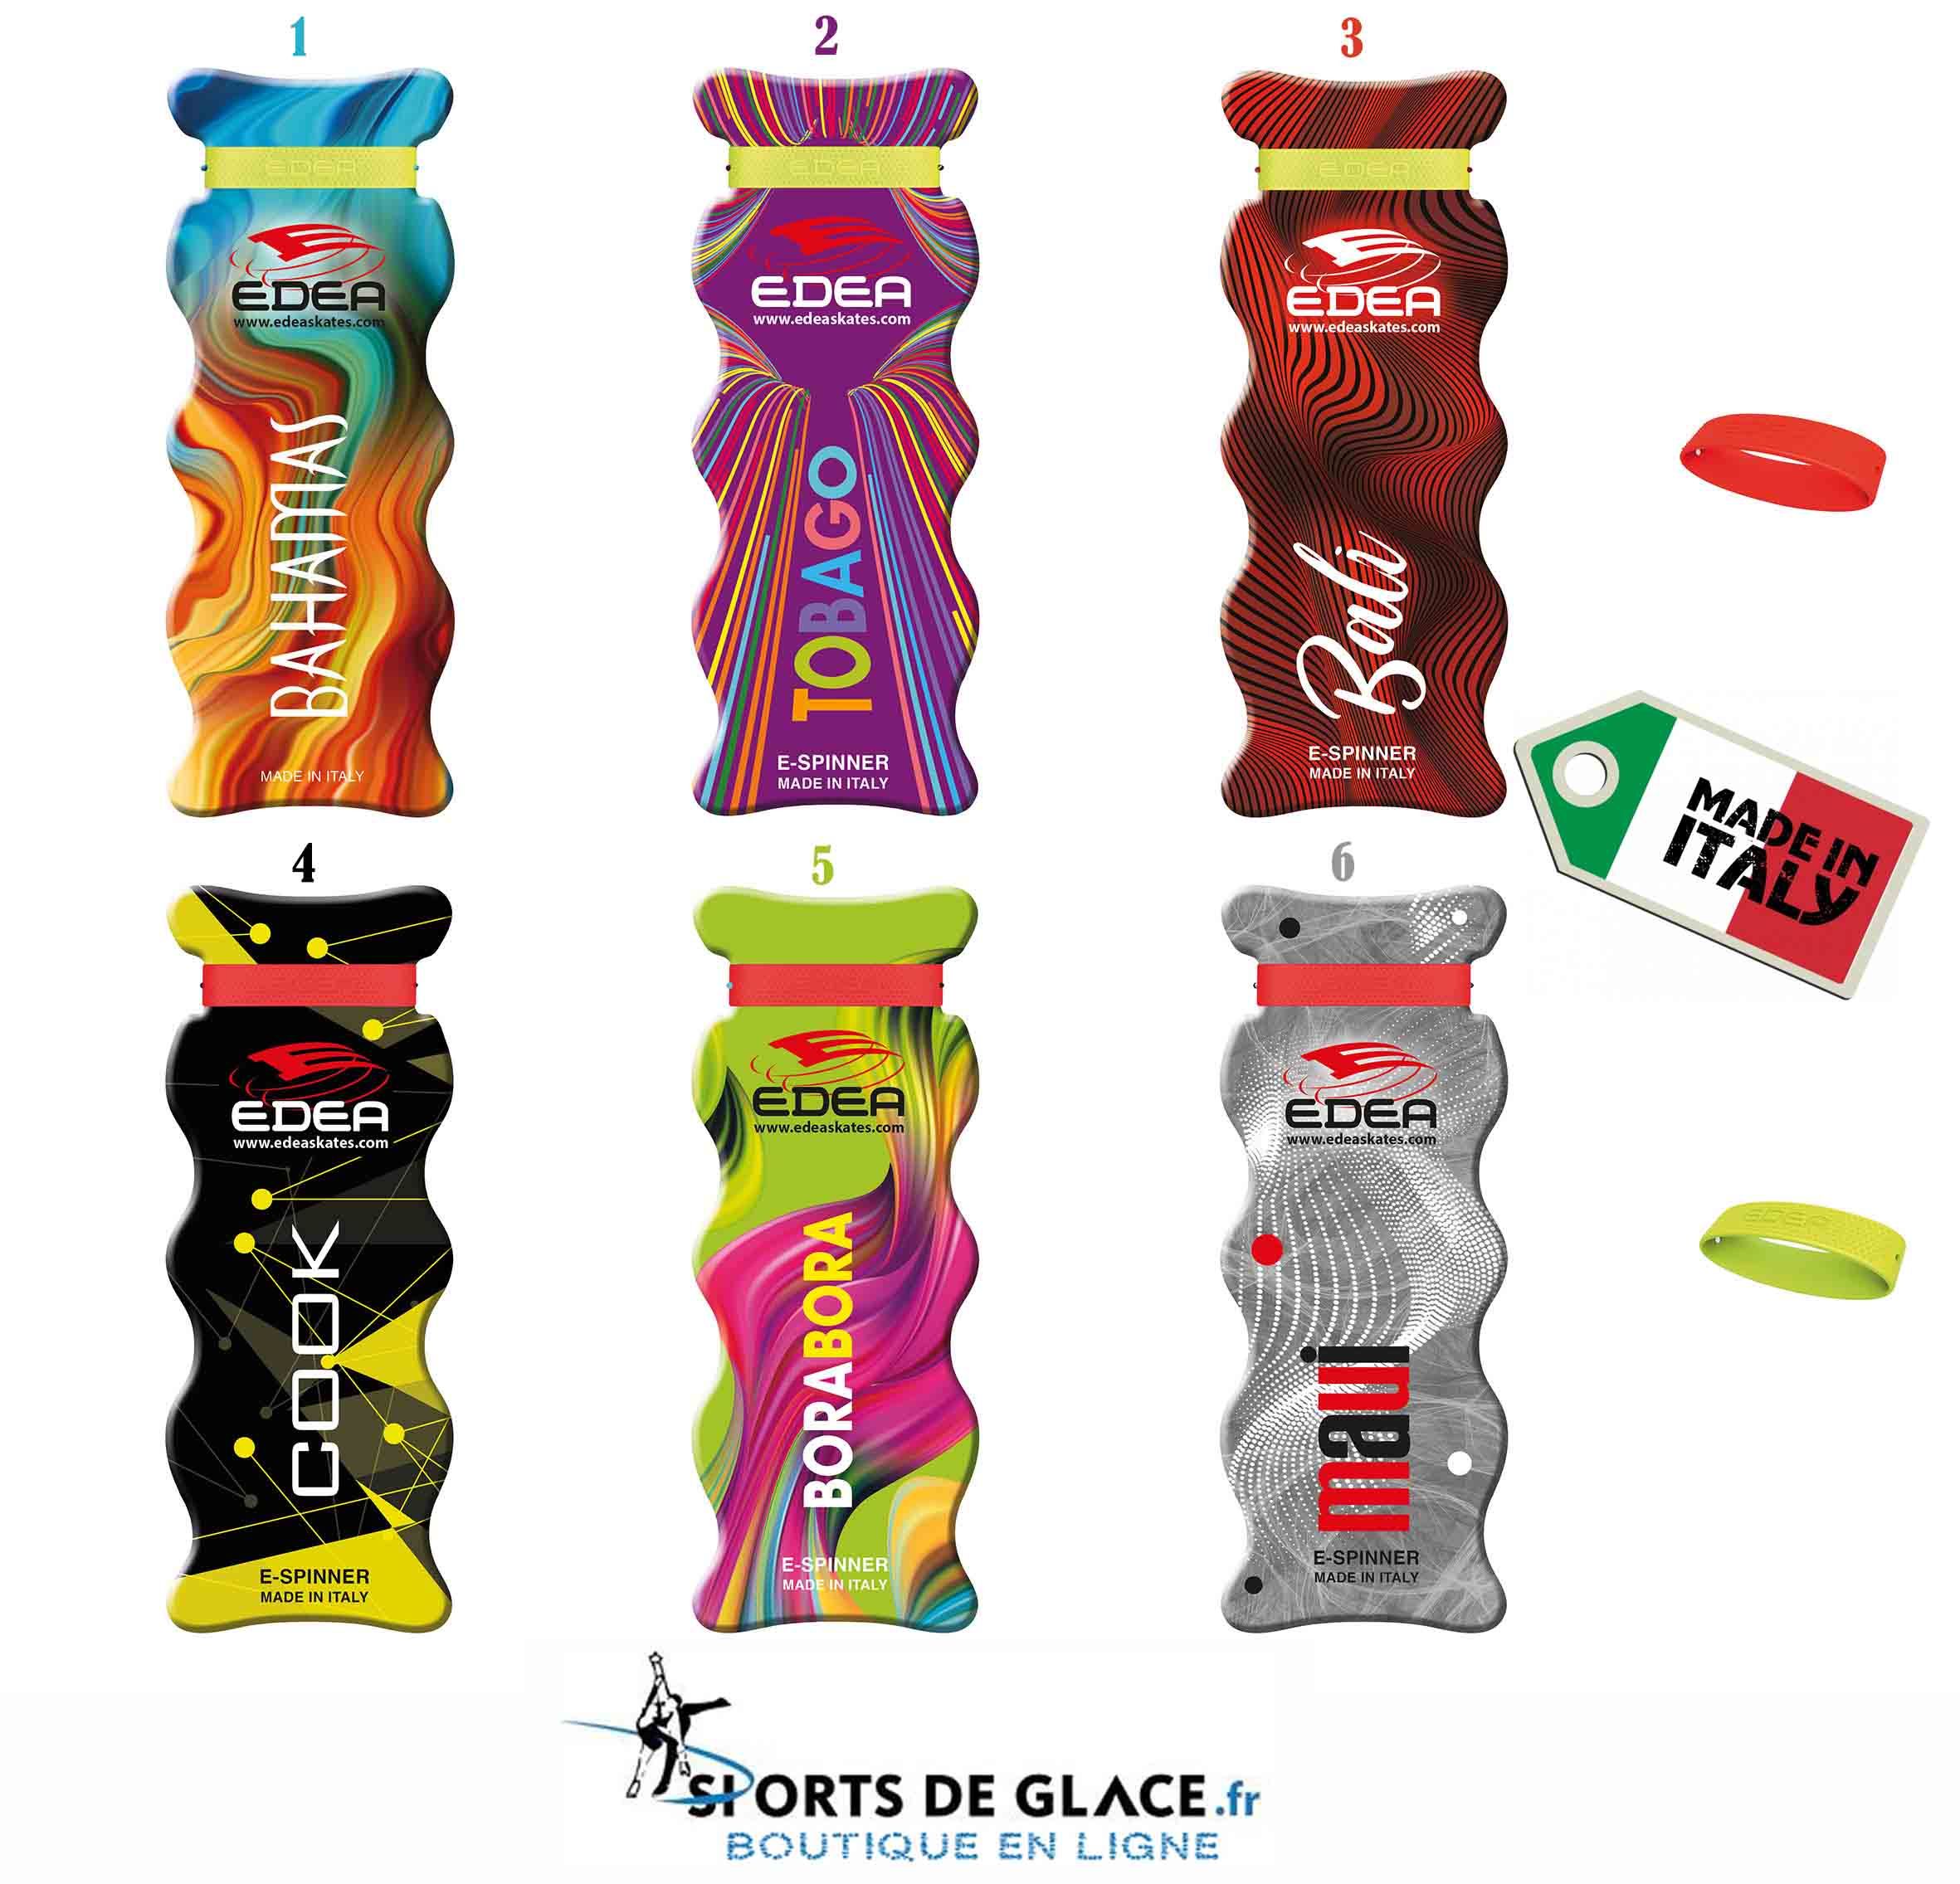 E-SPINNER EDEA - SPORTS DE GLACE France